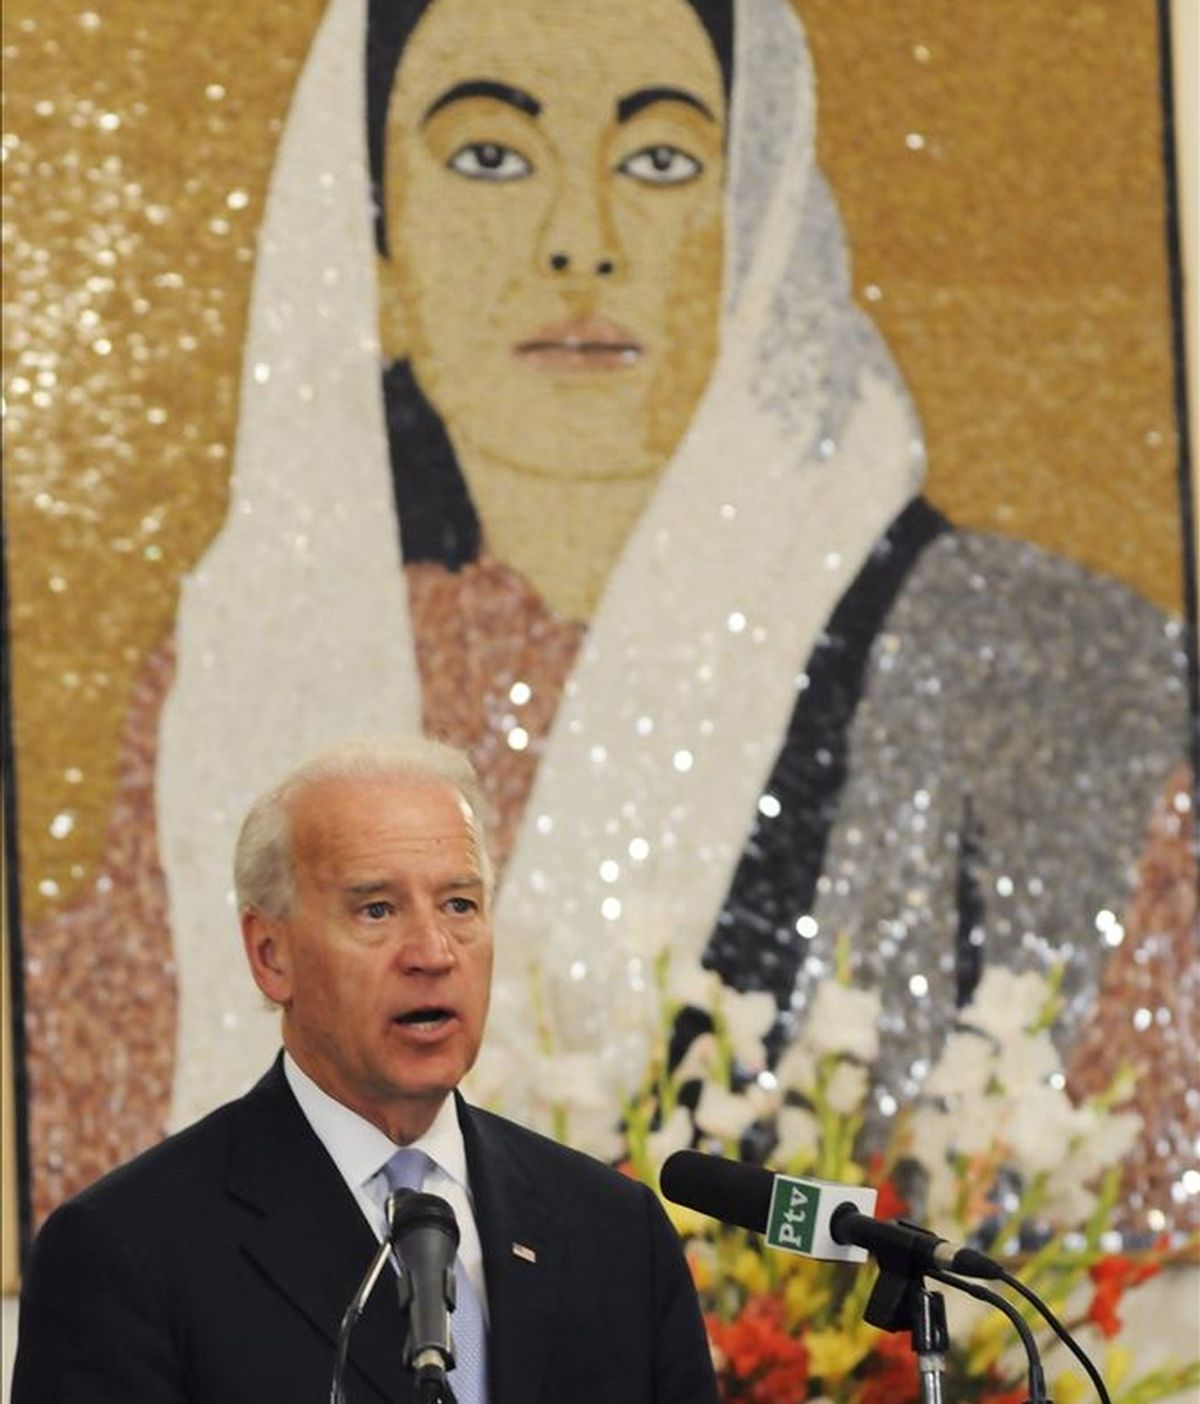 El vicepresidente estadounidense, Joe Biden, interviene durante una conferencia de prensa, en Islamabad, Pakistán. EFE